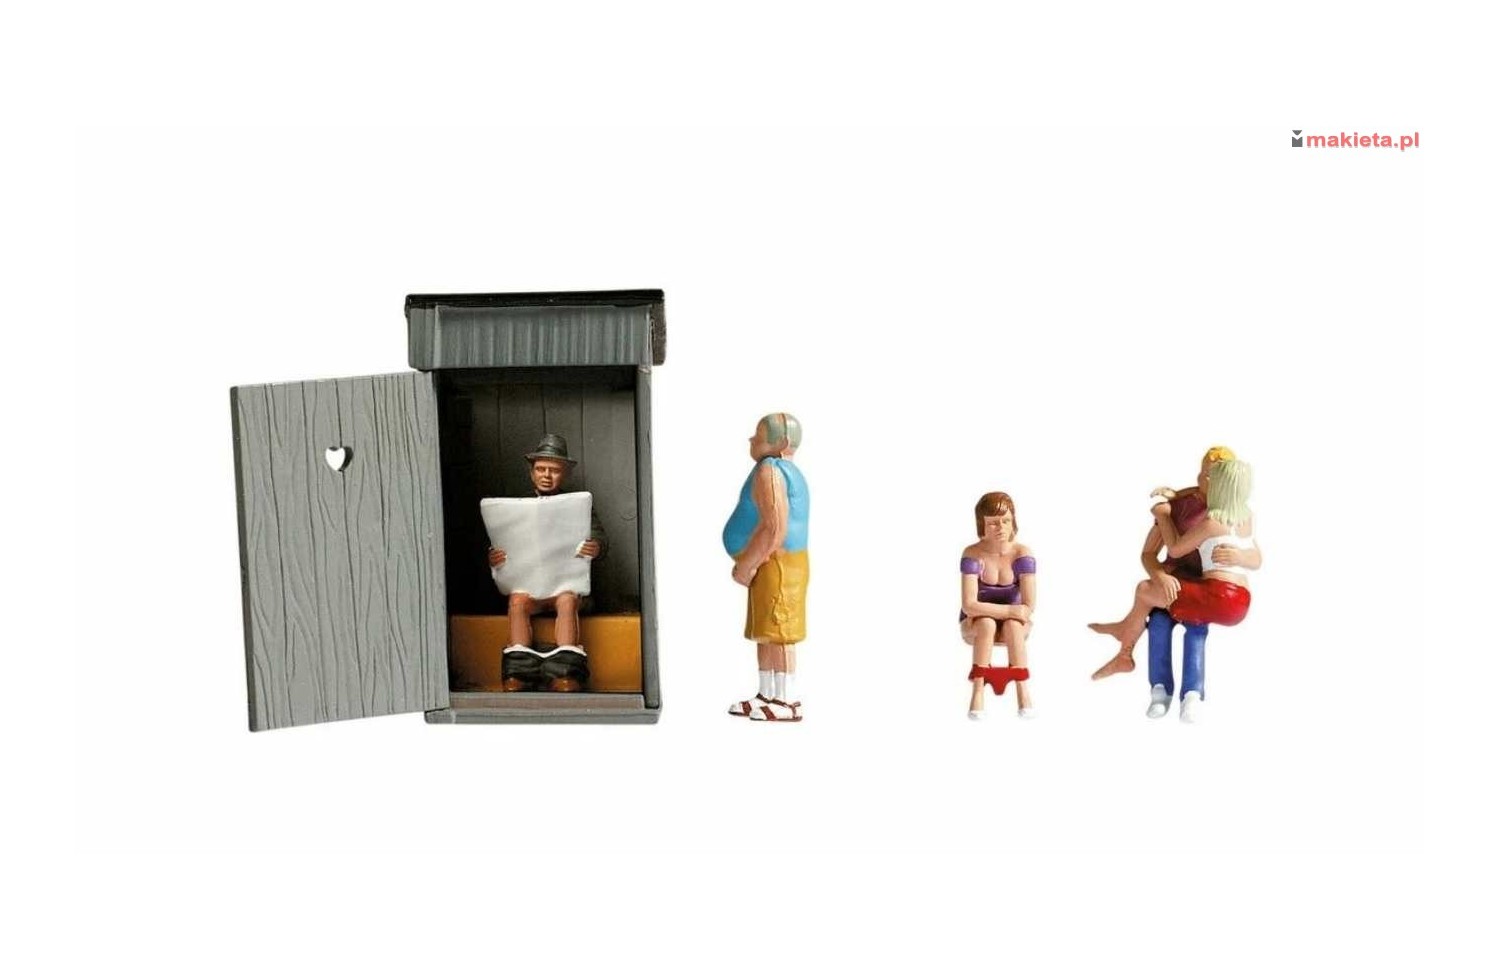 NOCH 45560. "Toaletowe historie" - scenka, figurki, akcesoria, skala TT 1:120